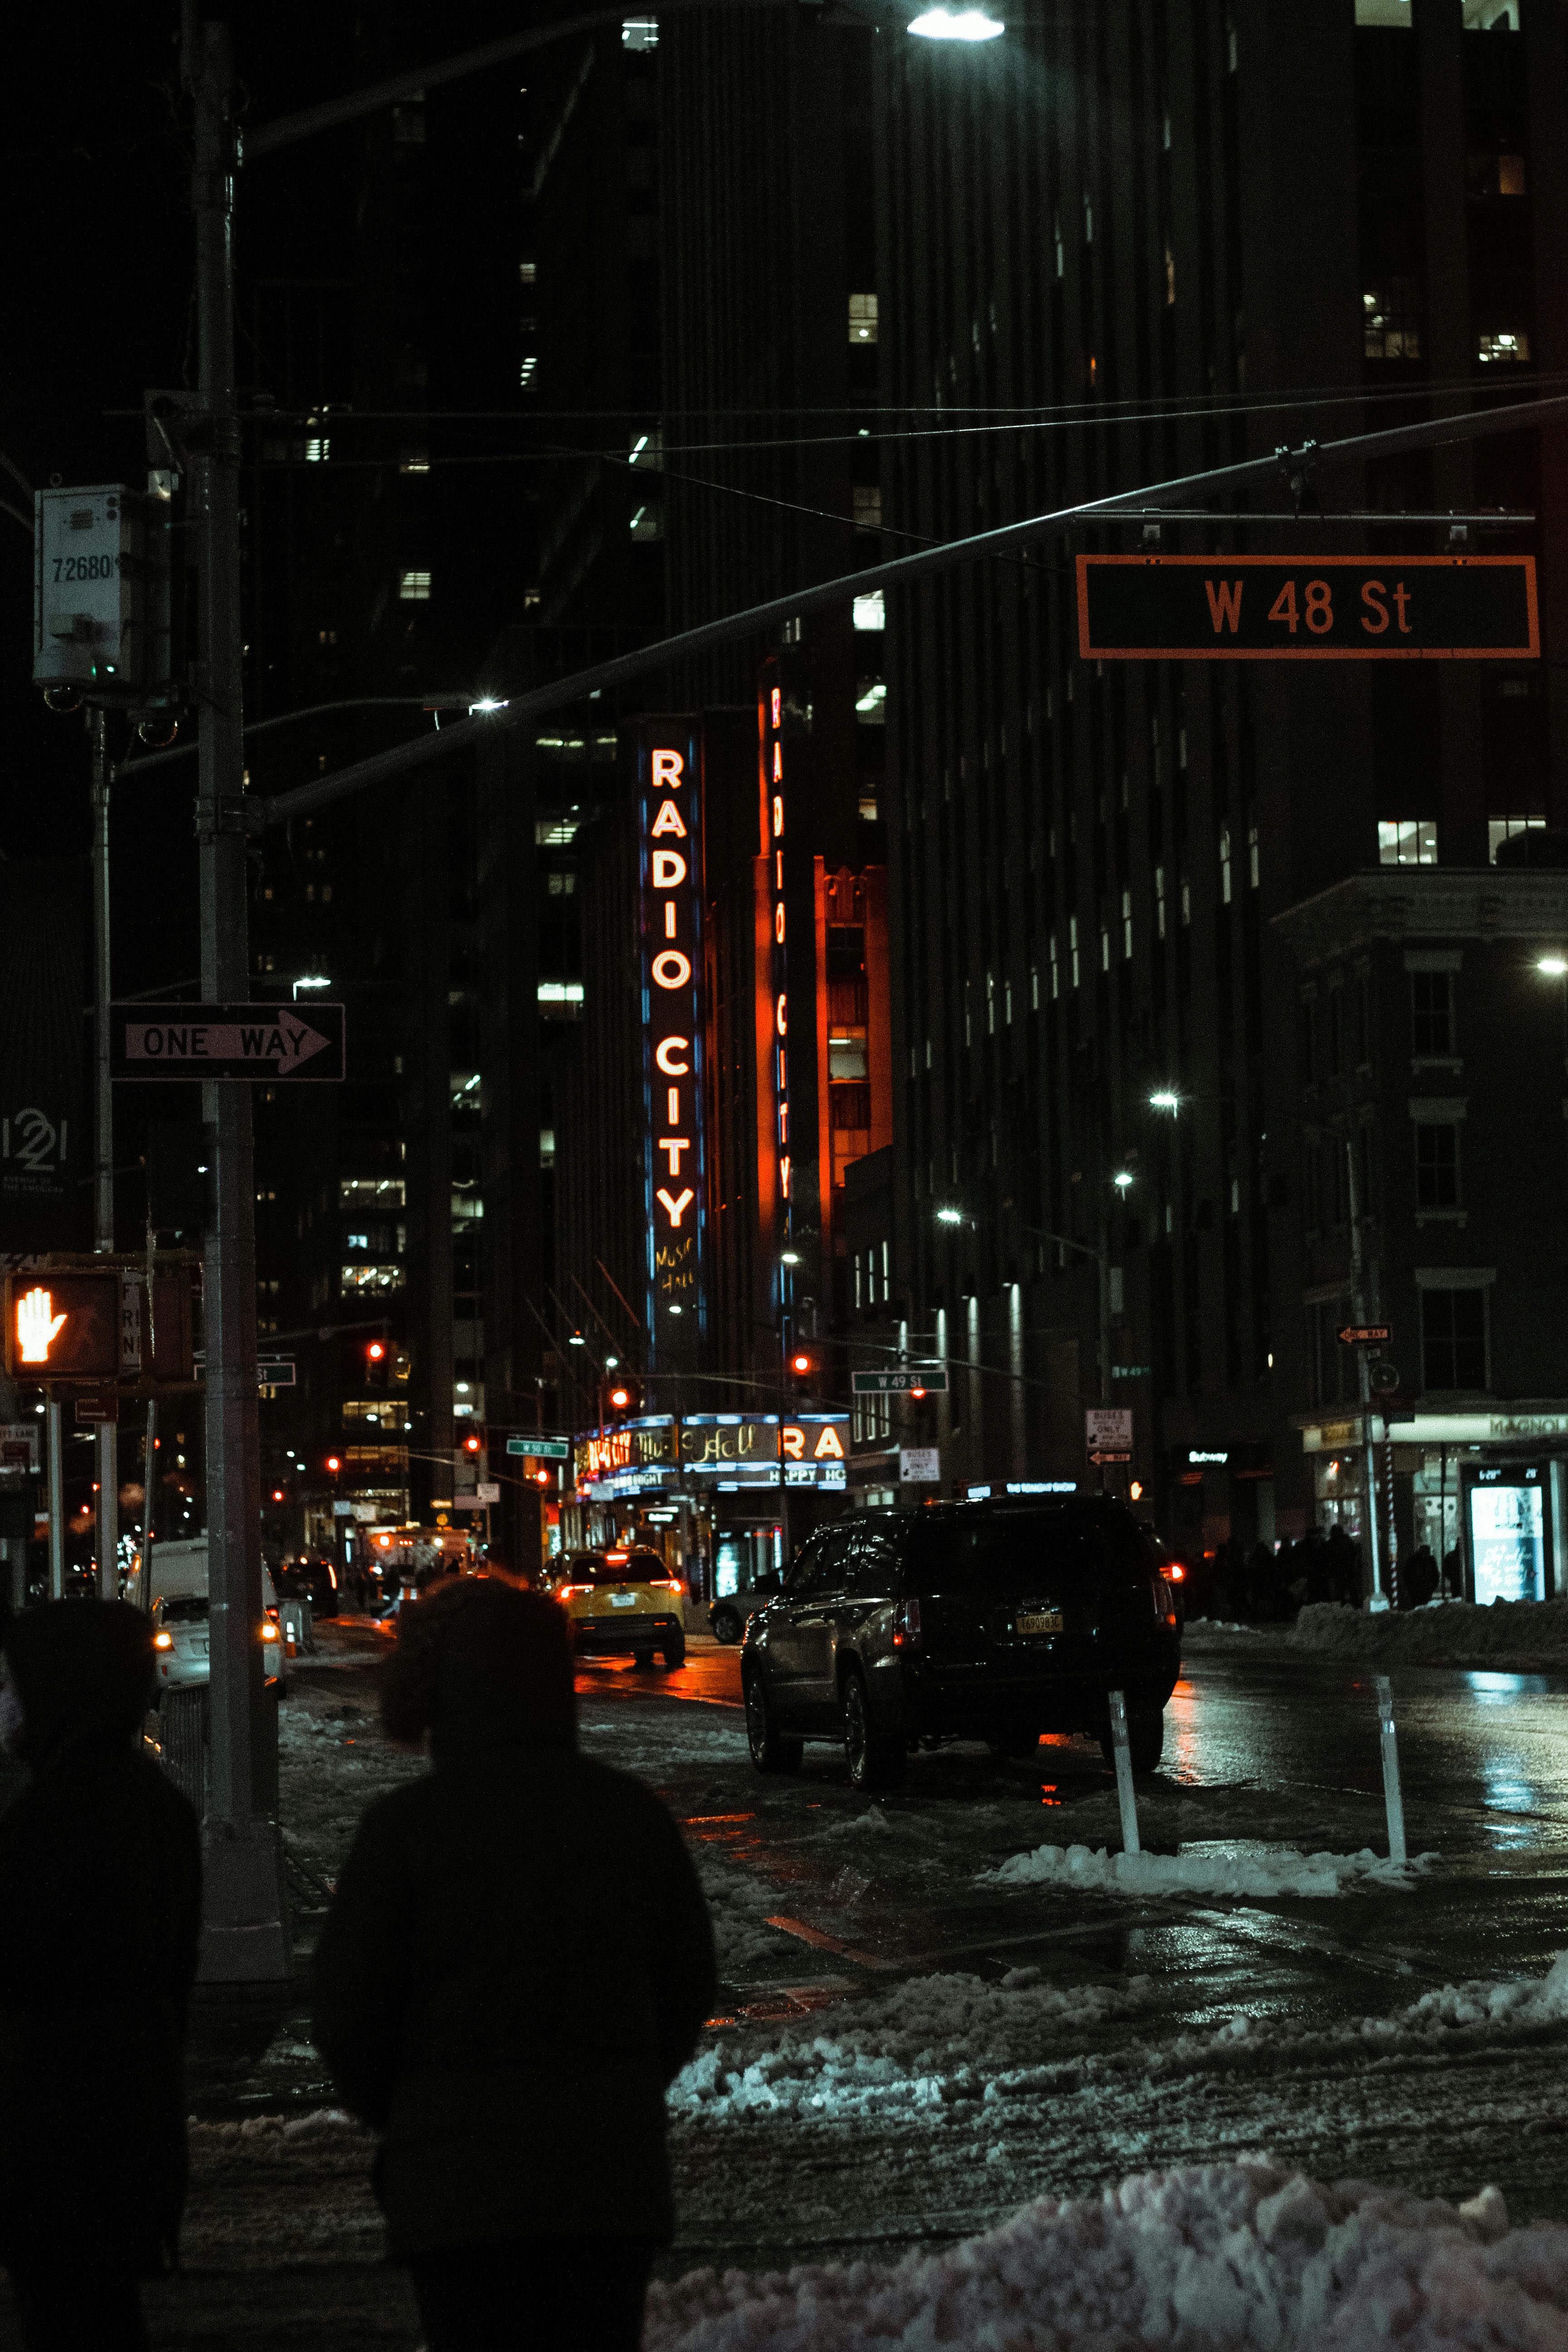 New York đêm: Đến với New York đêm, bạn sẽ được trở về thời điểm này của thành phố nhộn nhịp và thưởng thức tầm nhìn đẹp như tranh. Không gian tuyệt đẹp này chắc chắn sẽ thu hút bạn thực sự.